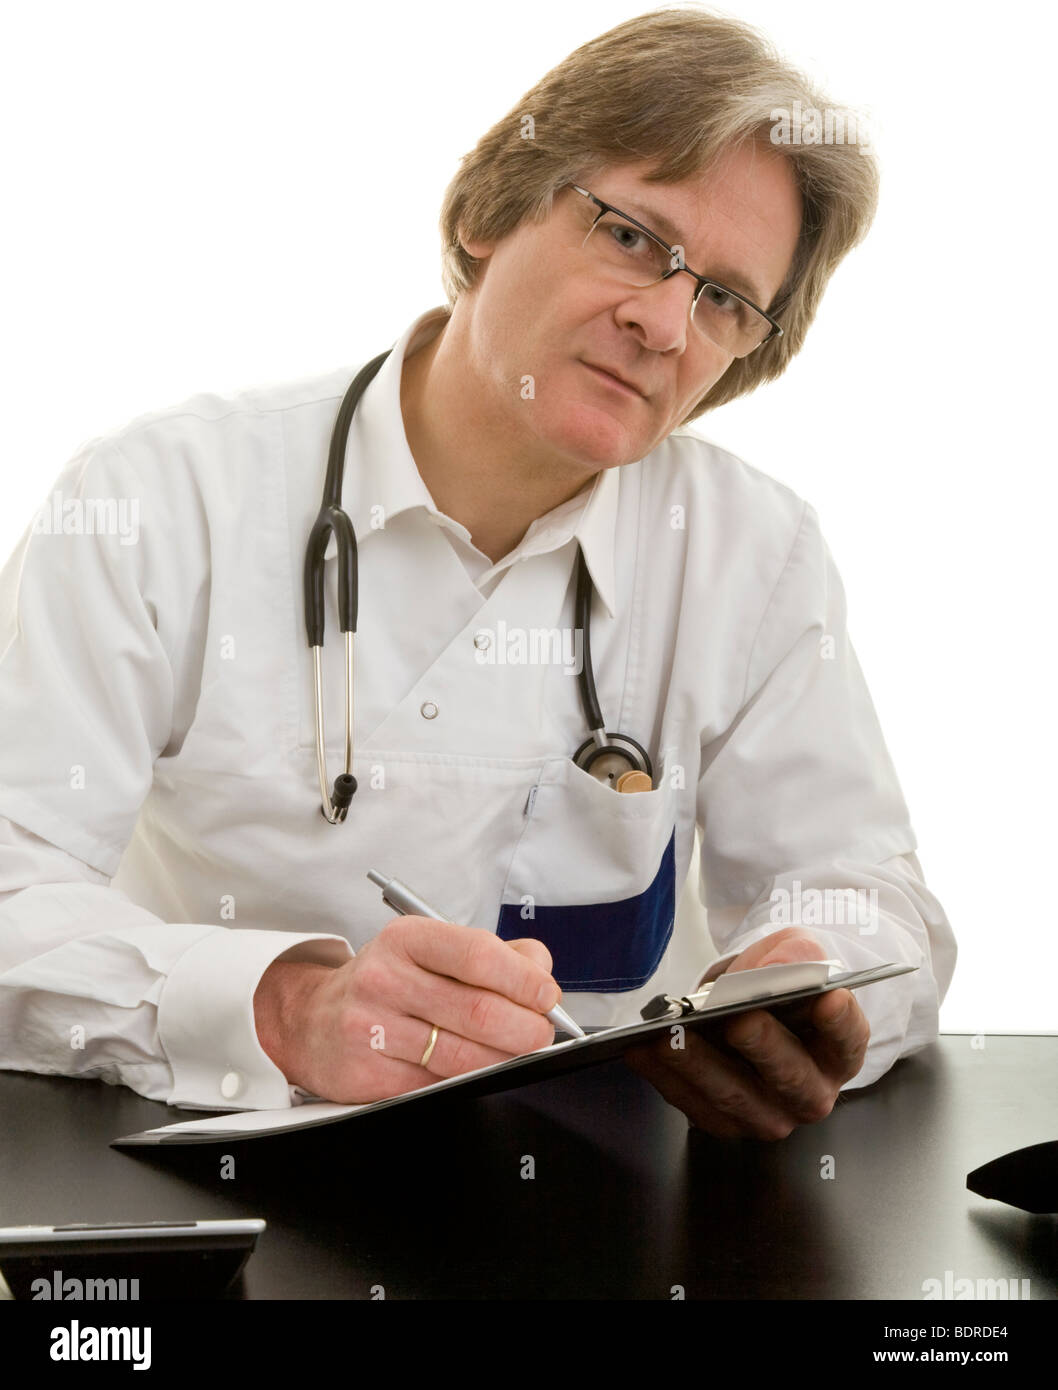 Arzt sitzt mit Kugelschreiber und Klemmbrett un seinem Schreibtisch Foto Stock